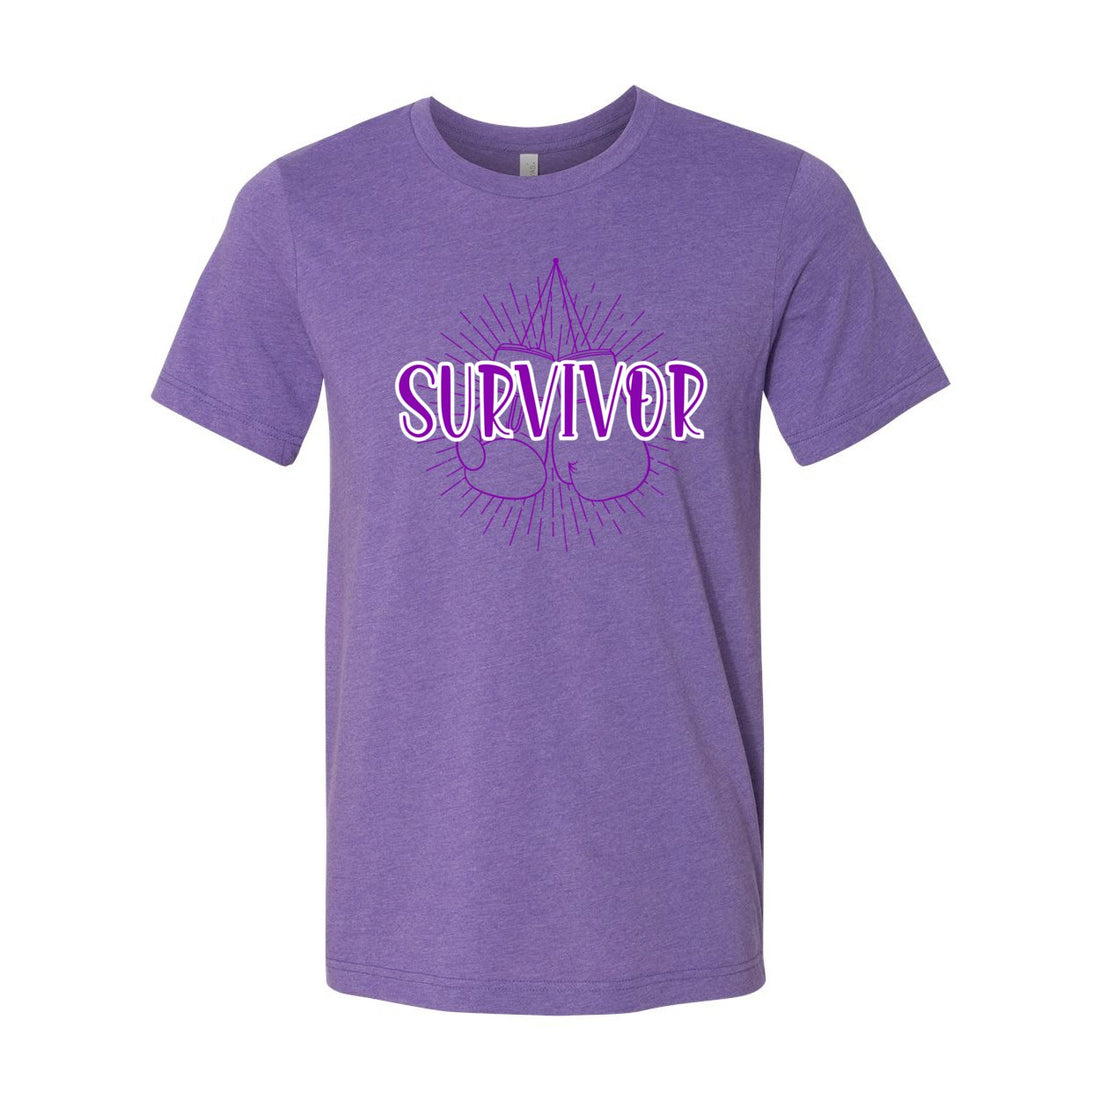 Survivor Unisex Short Sleeve Jersey Tee - T-Shirts - Positively Sassy - Survivor Unisex Short Sleeve Jersey Tee